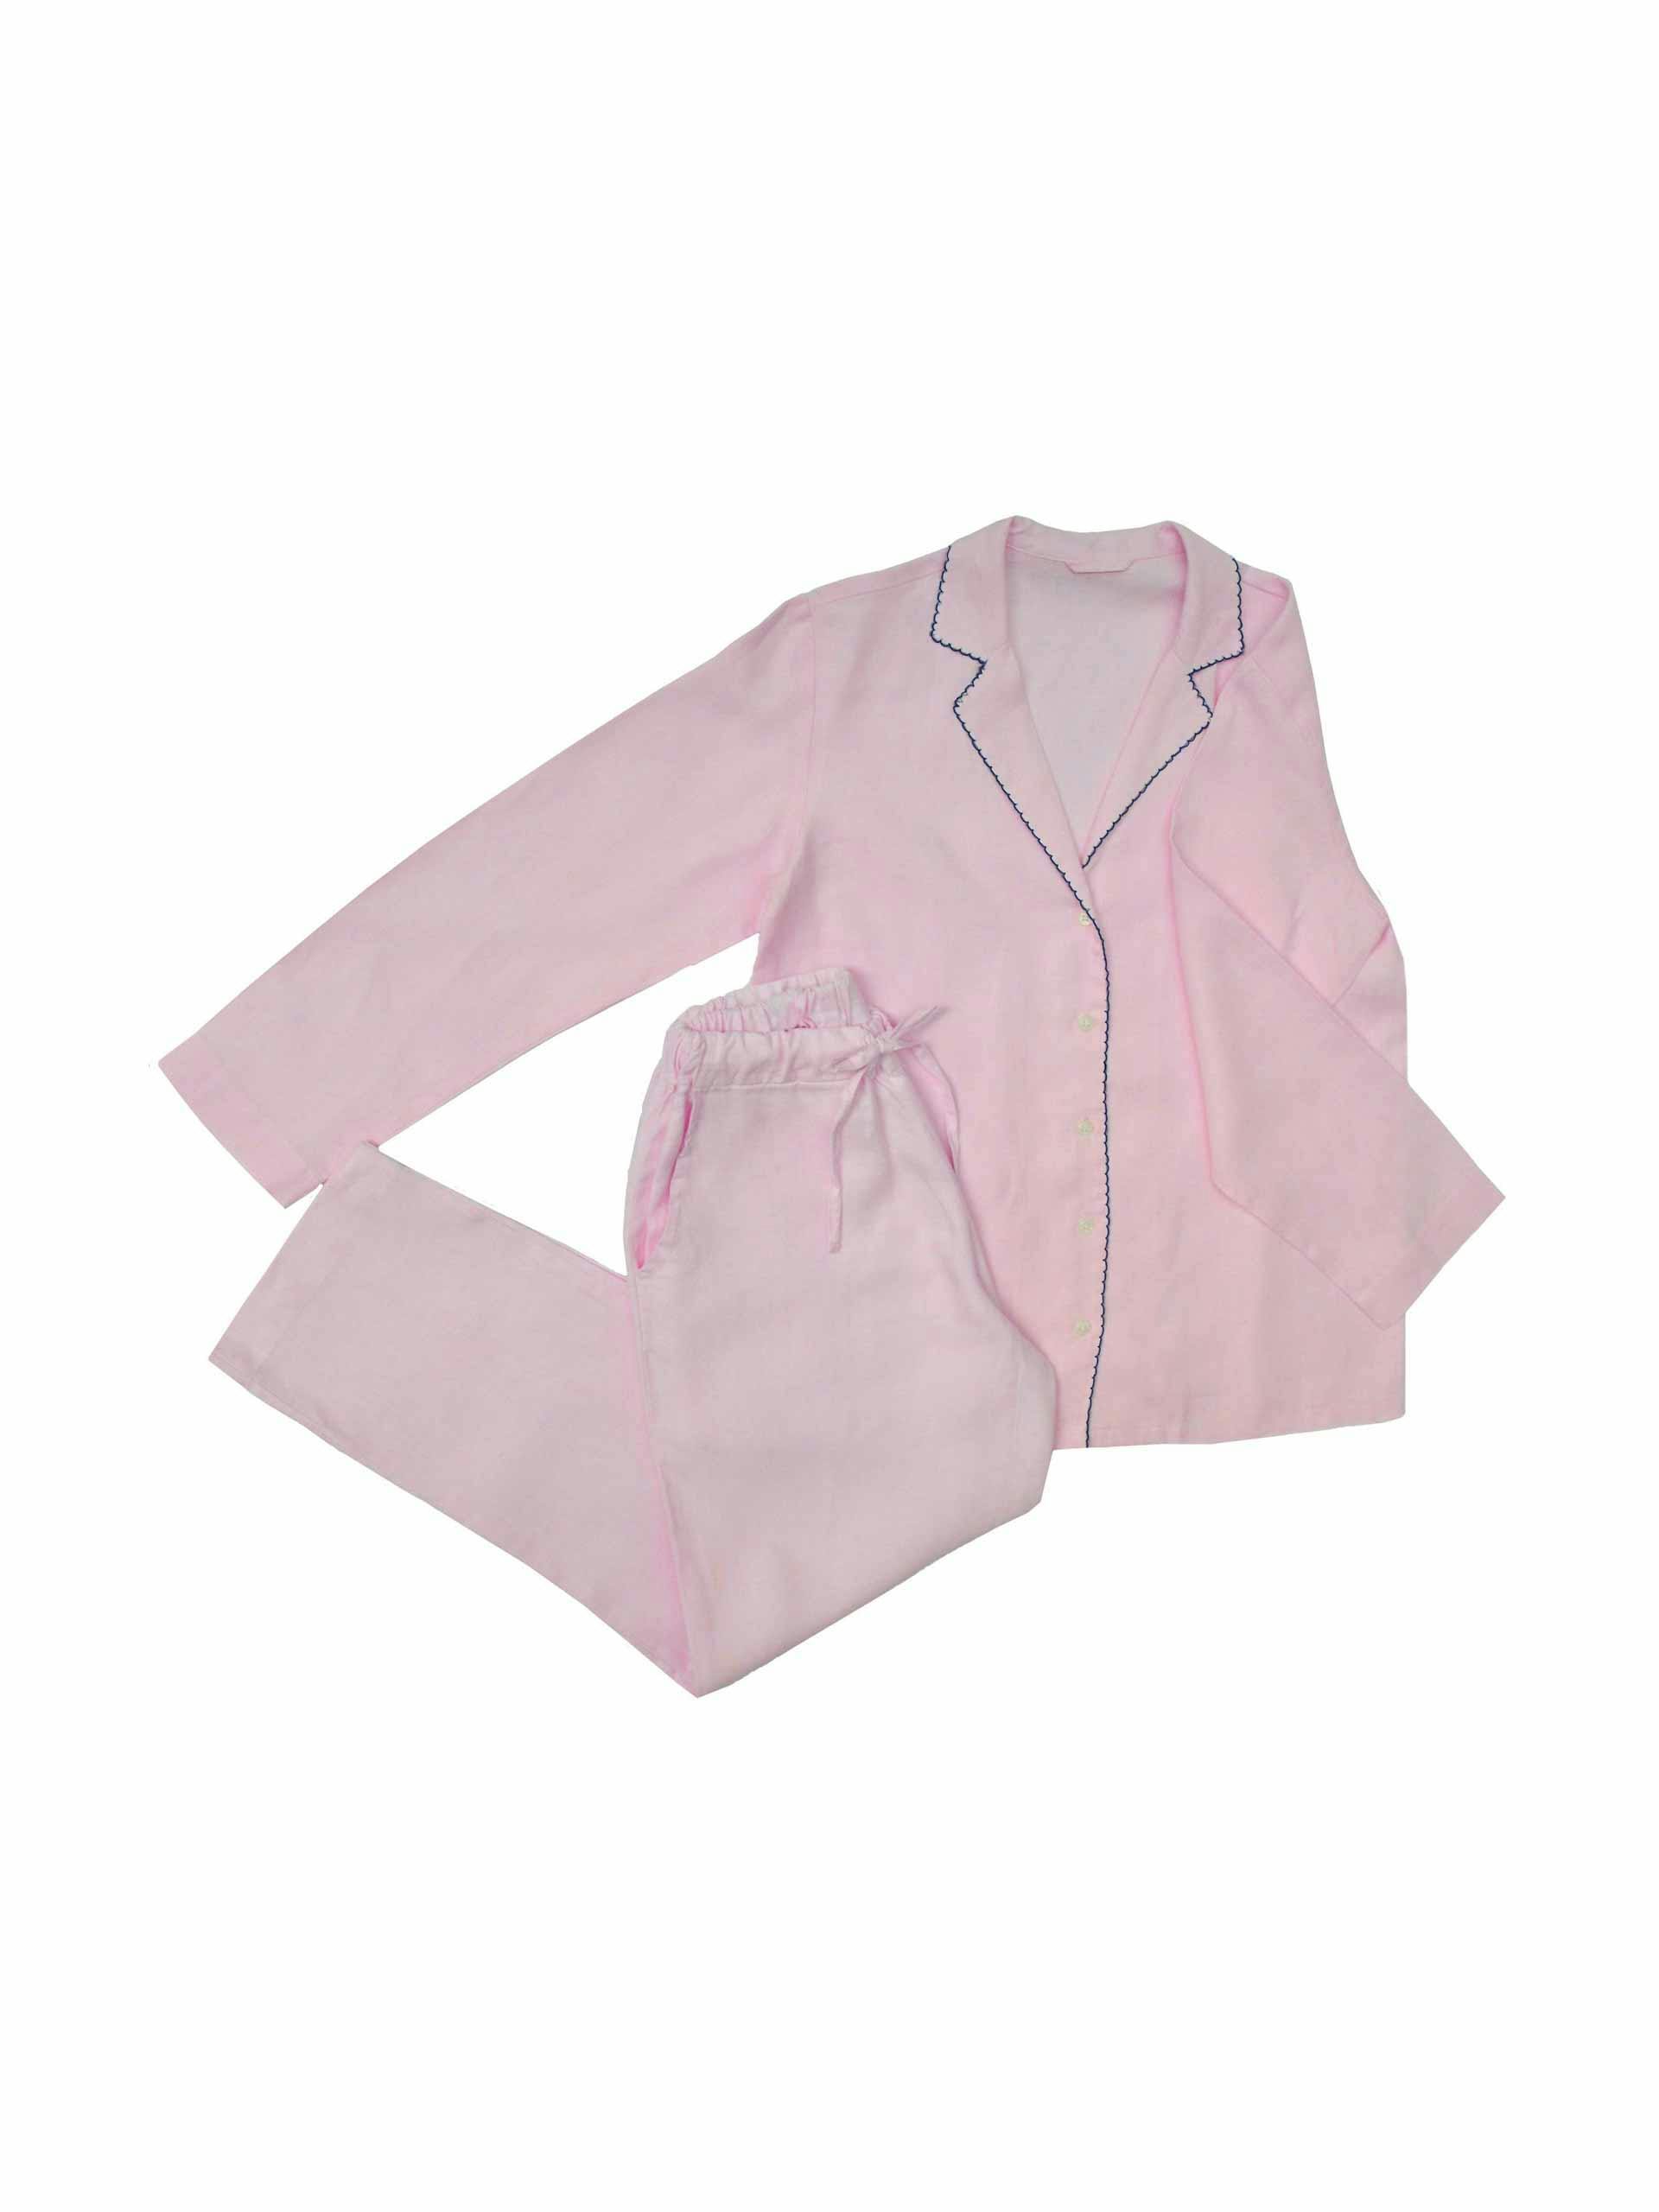 Mylasa pink hemp pyjamas